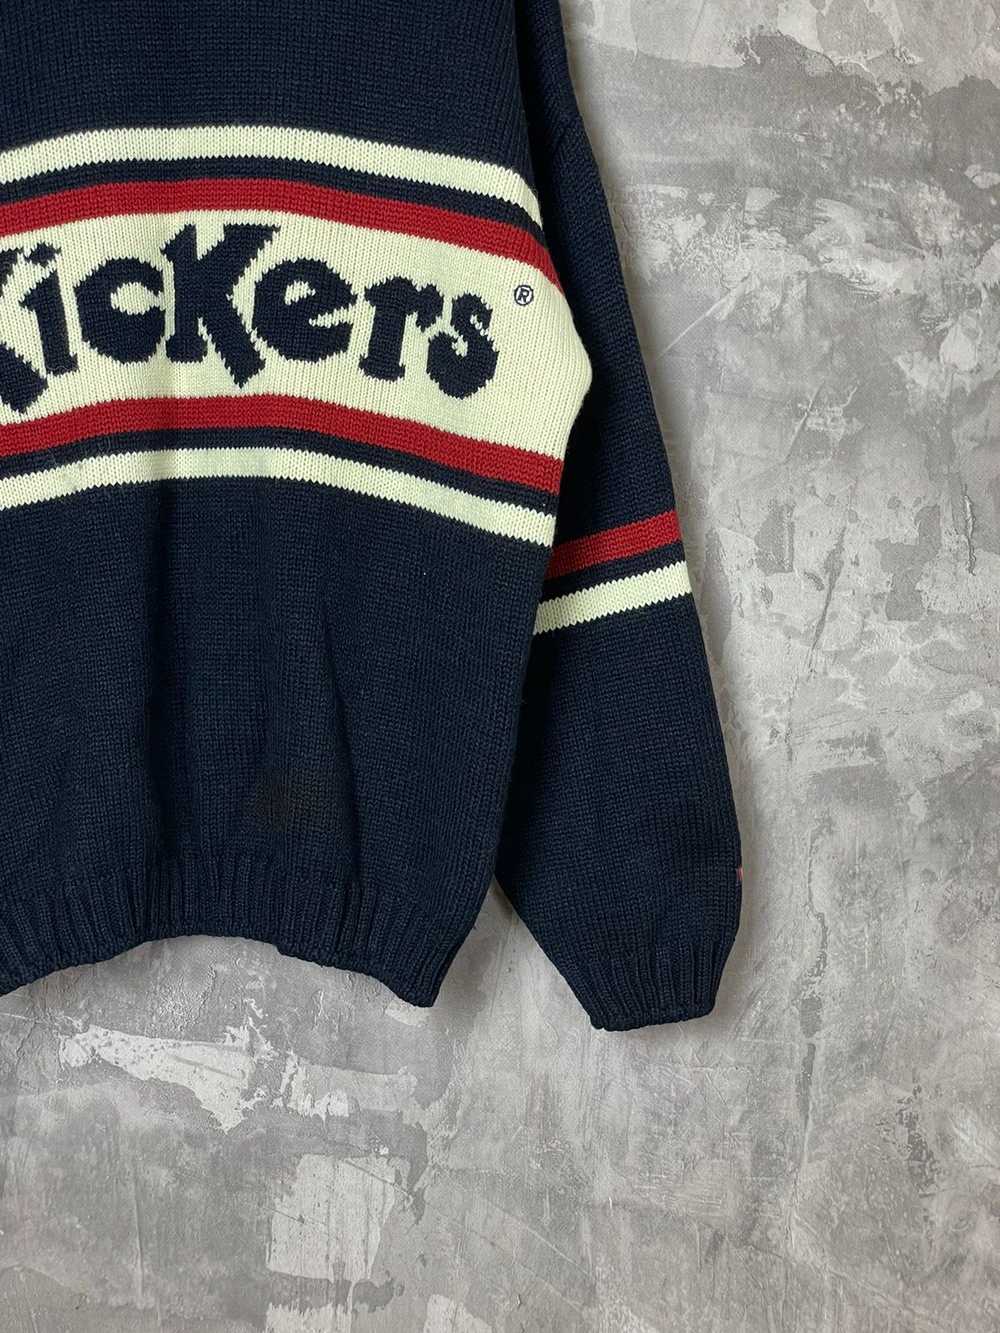 Kickers × Streetwear × Vintage Vintage 90s Kicker… - image 6